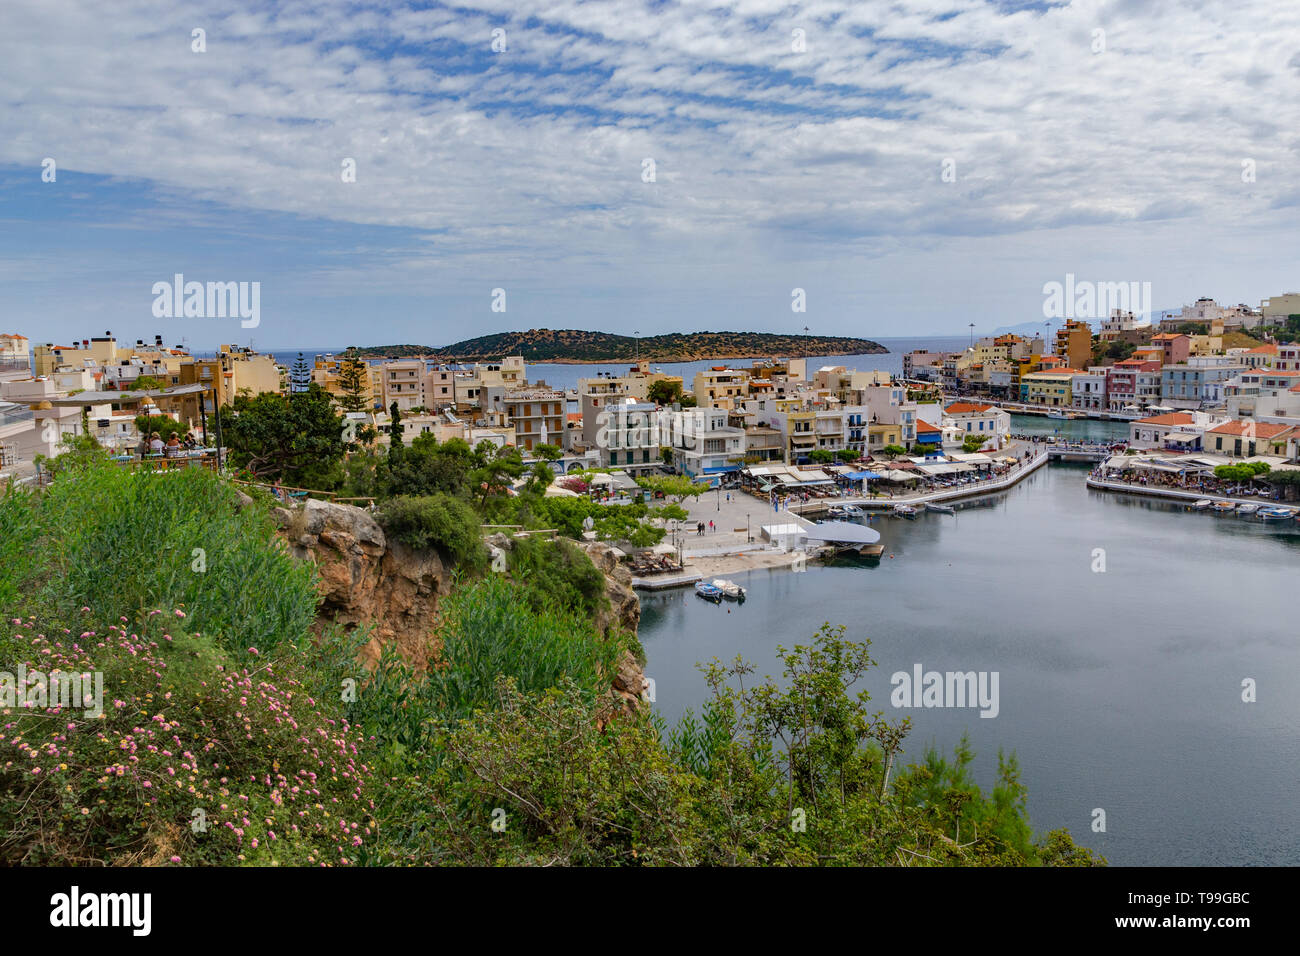 View of Agios Nikolaos and its harbor,crete Stock Photo